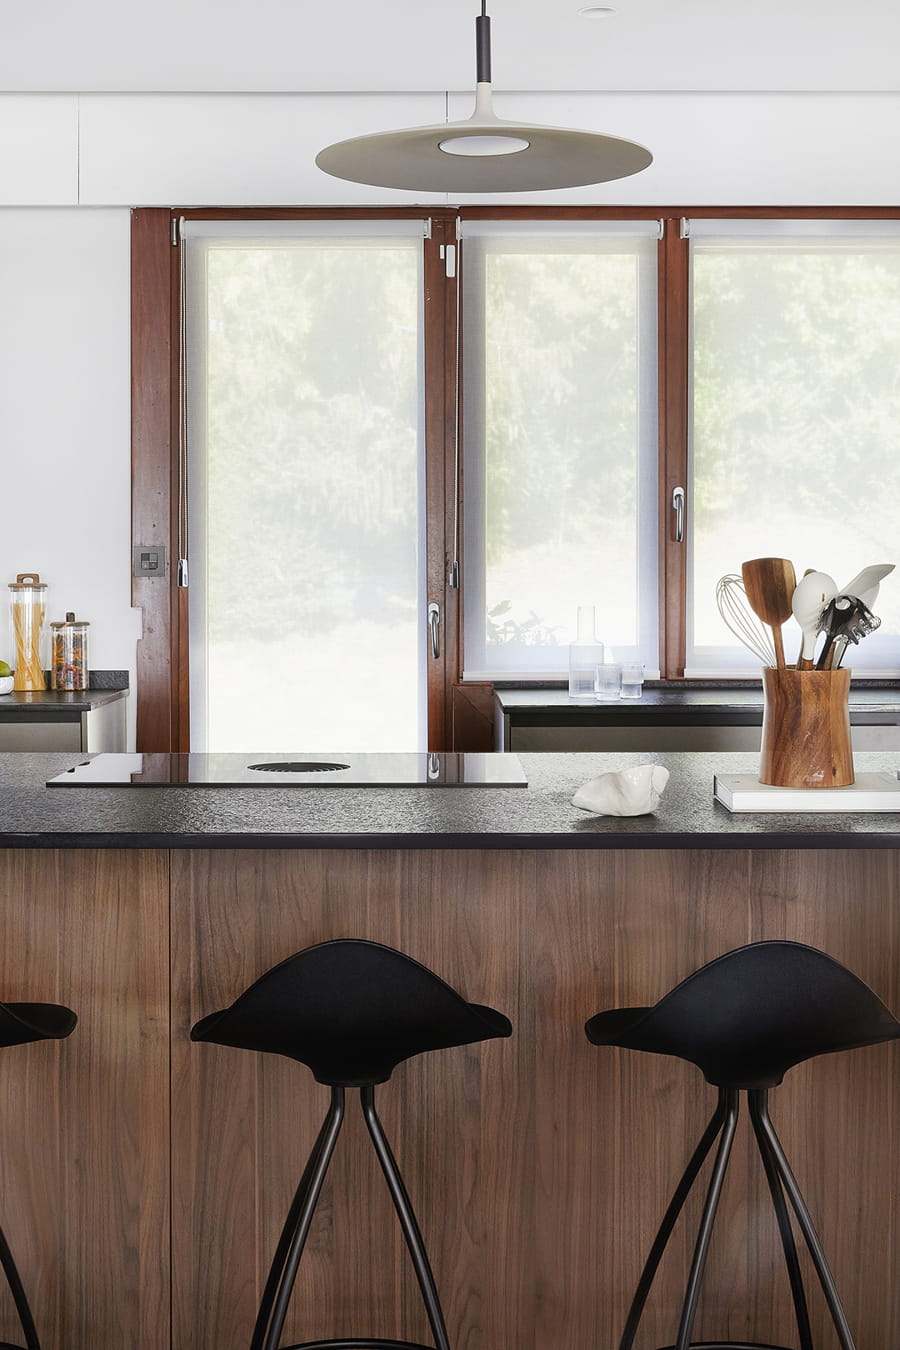 Keuken in grijs en notelaarhout met eiland, open ontwerp.